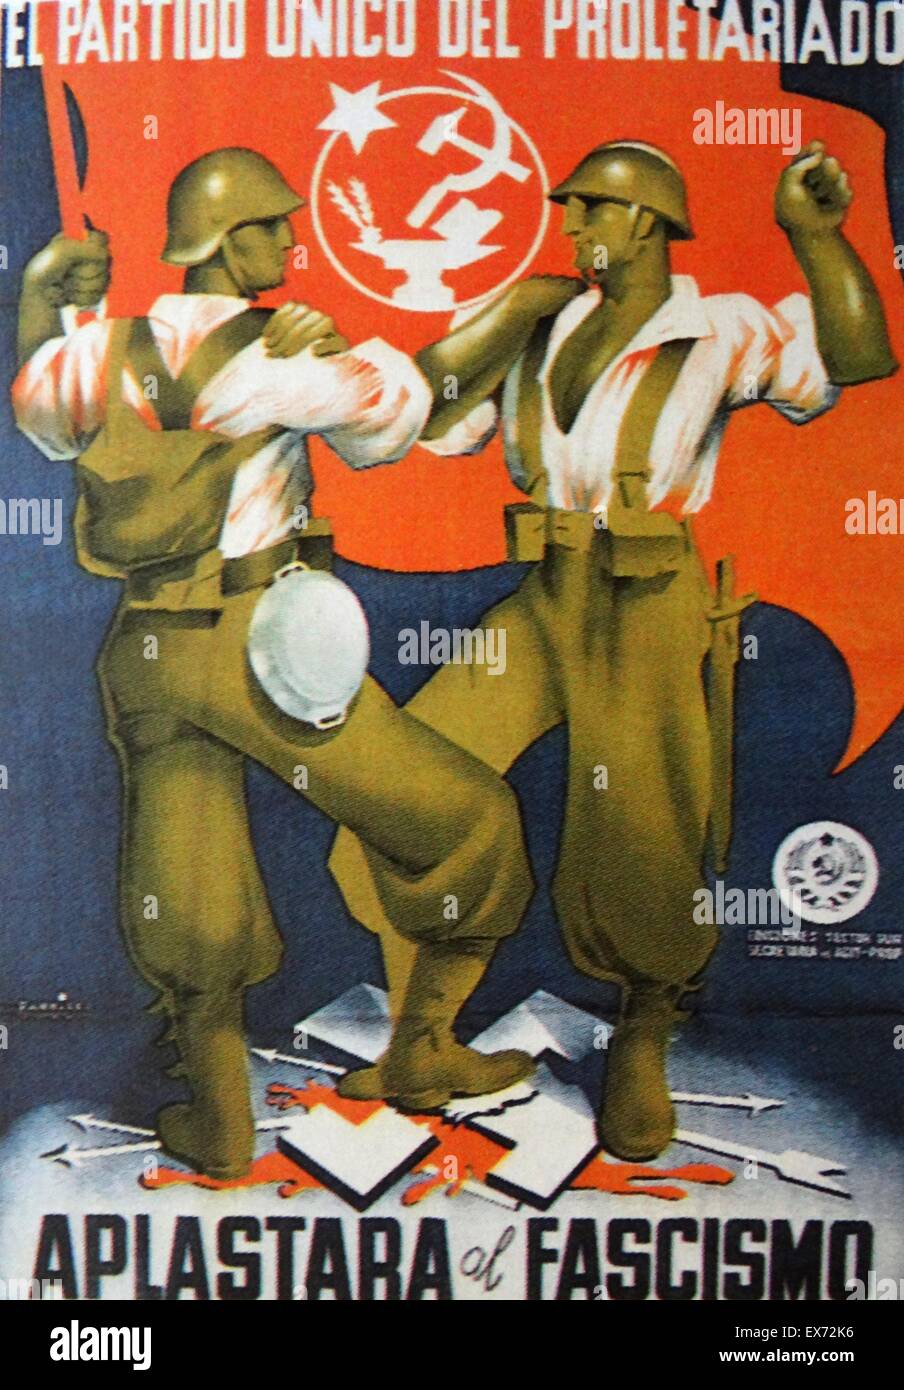 nur die Partei des Proletariats wird zerschlagen Faschismus erklärt eine kommunistische republikanischen Propaganda-Plakat während des spanischen Bürgerkriegs Stockfoto